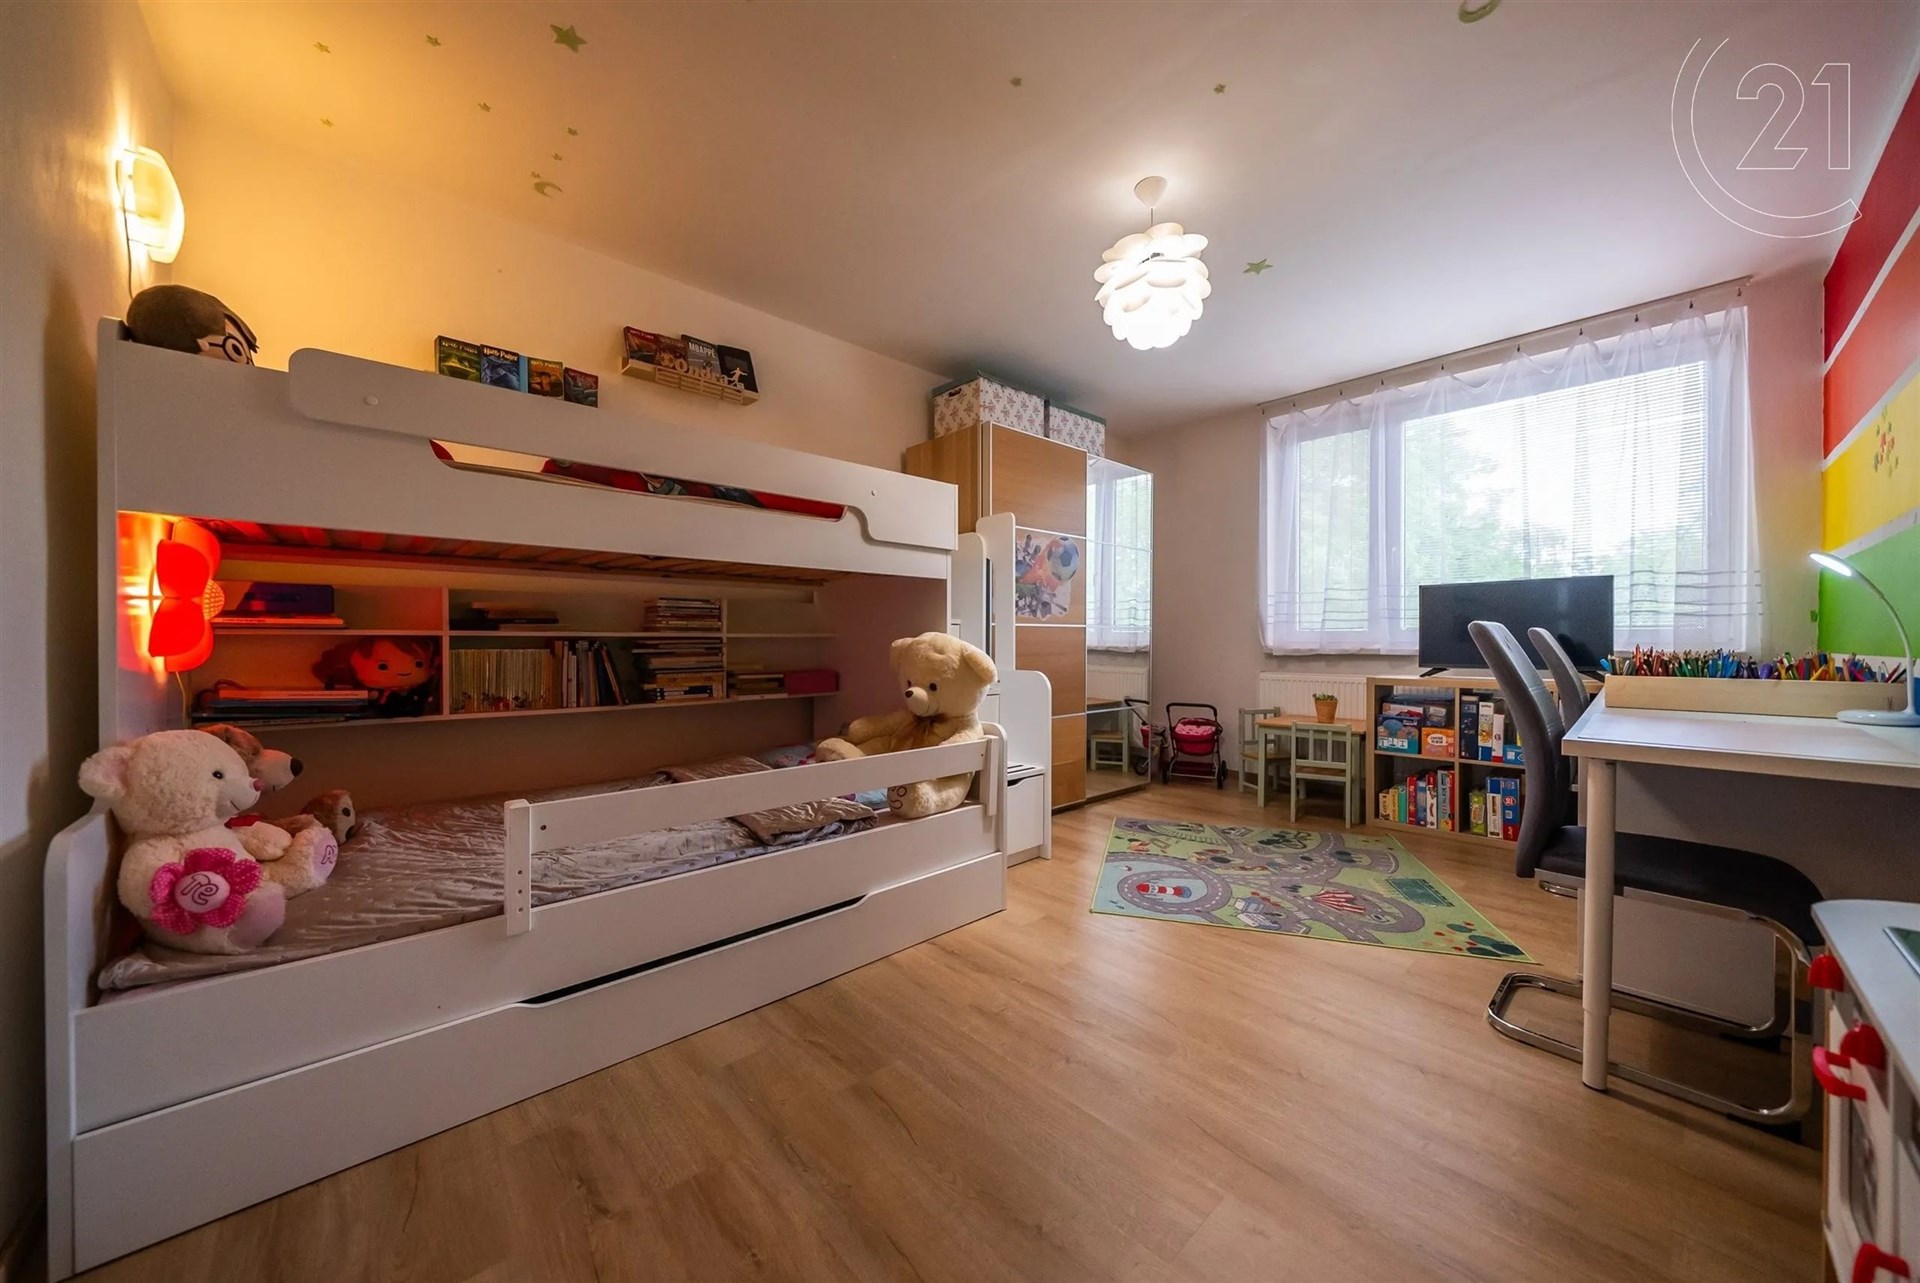 pokoj / ložnice s přirozené světlo, televize, a dřevěná podlaha